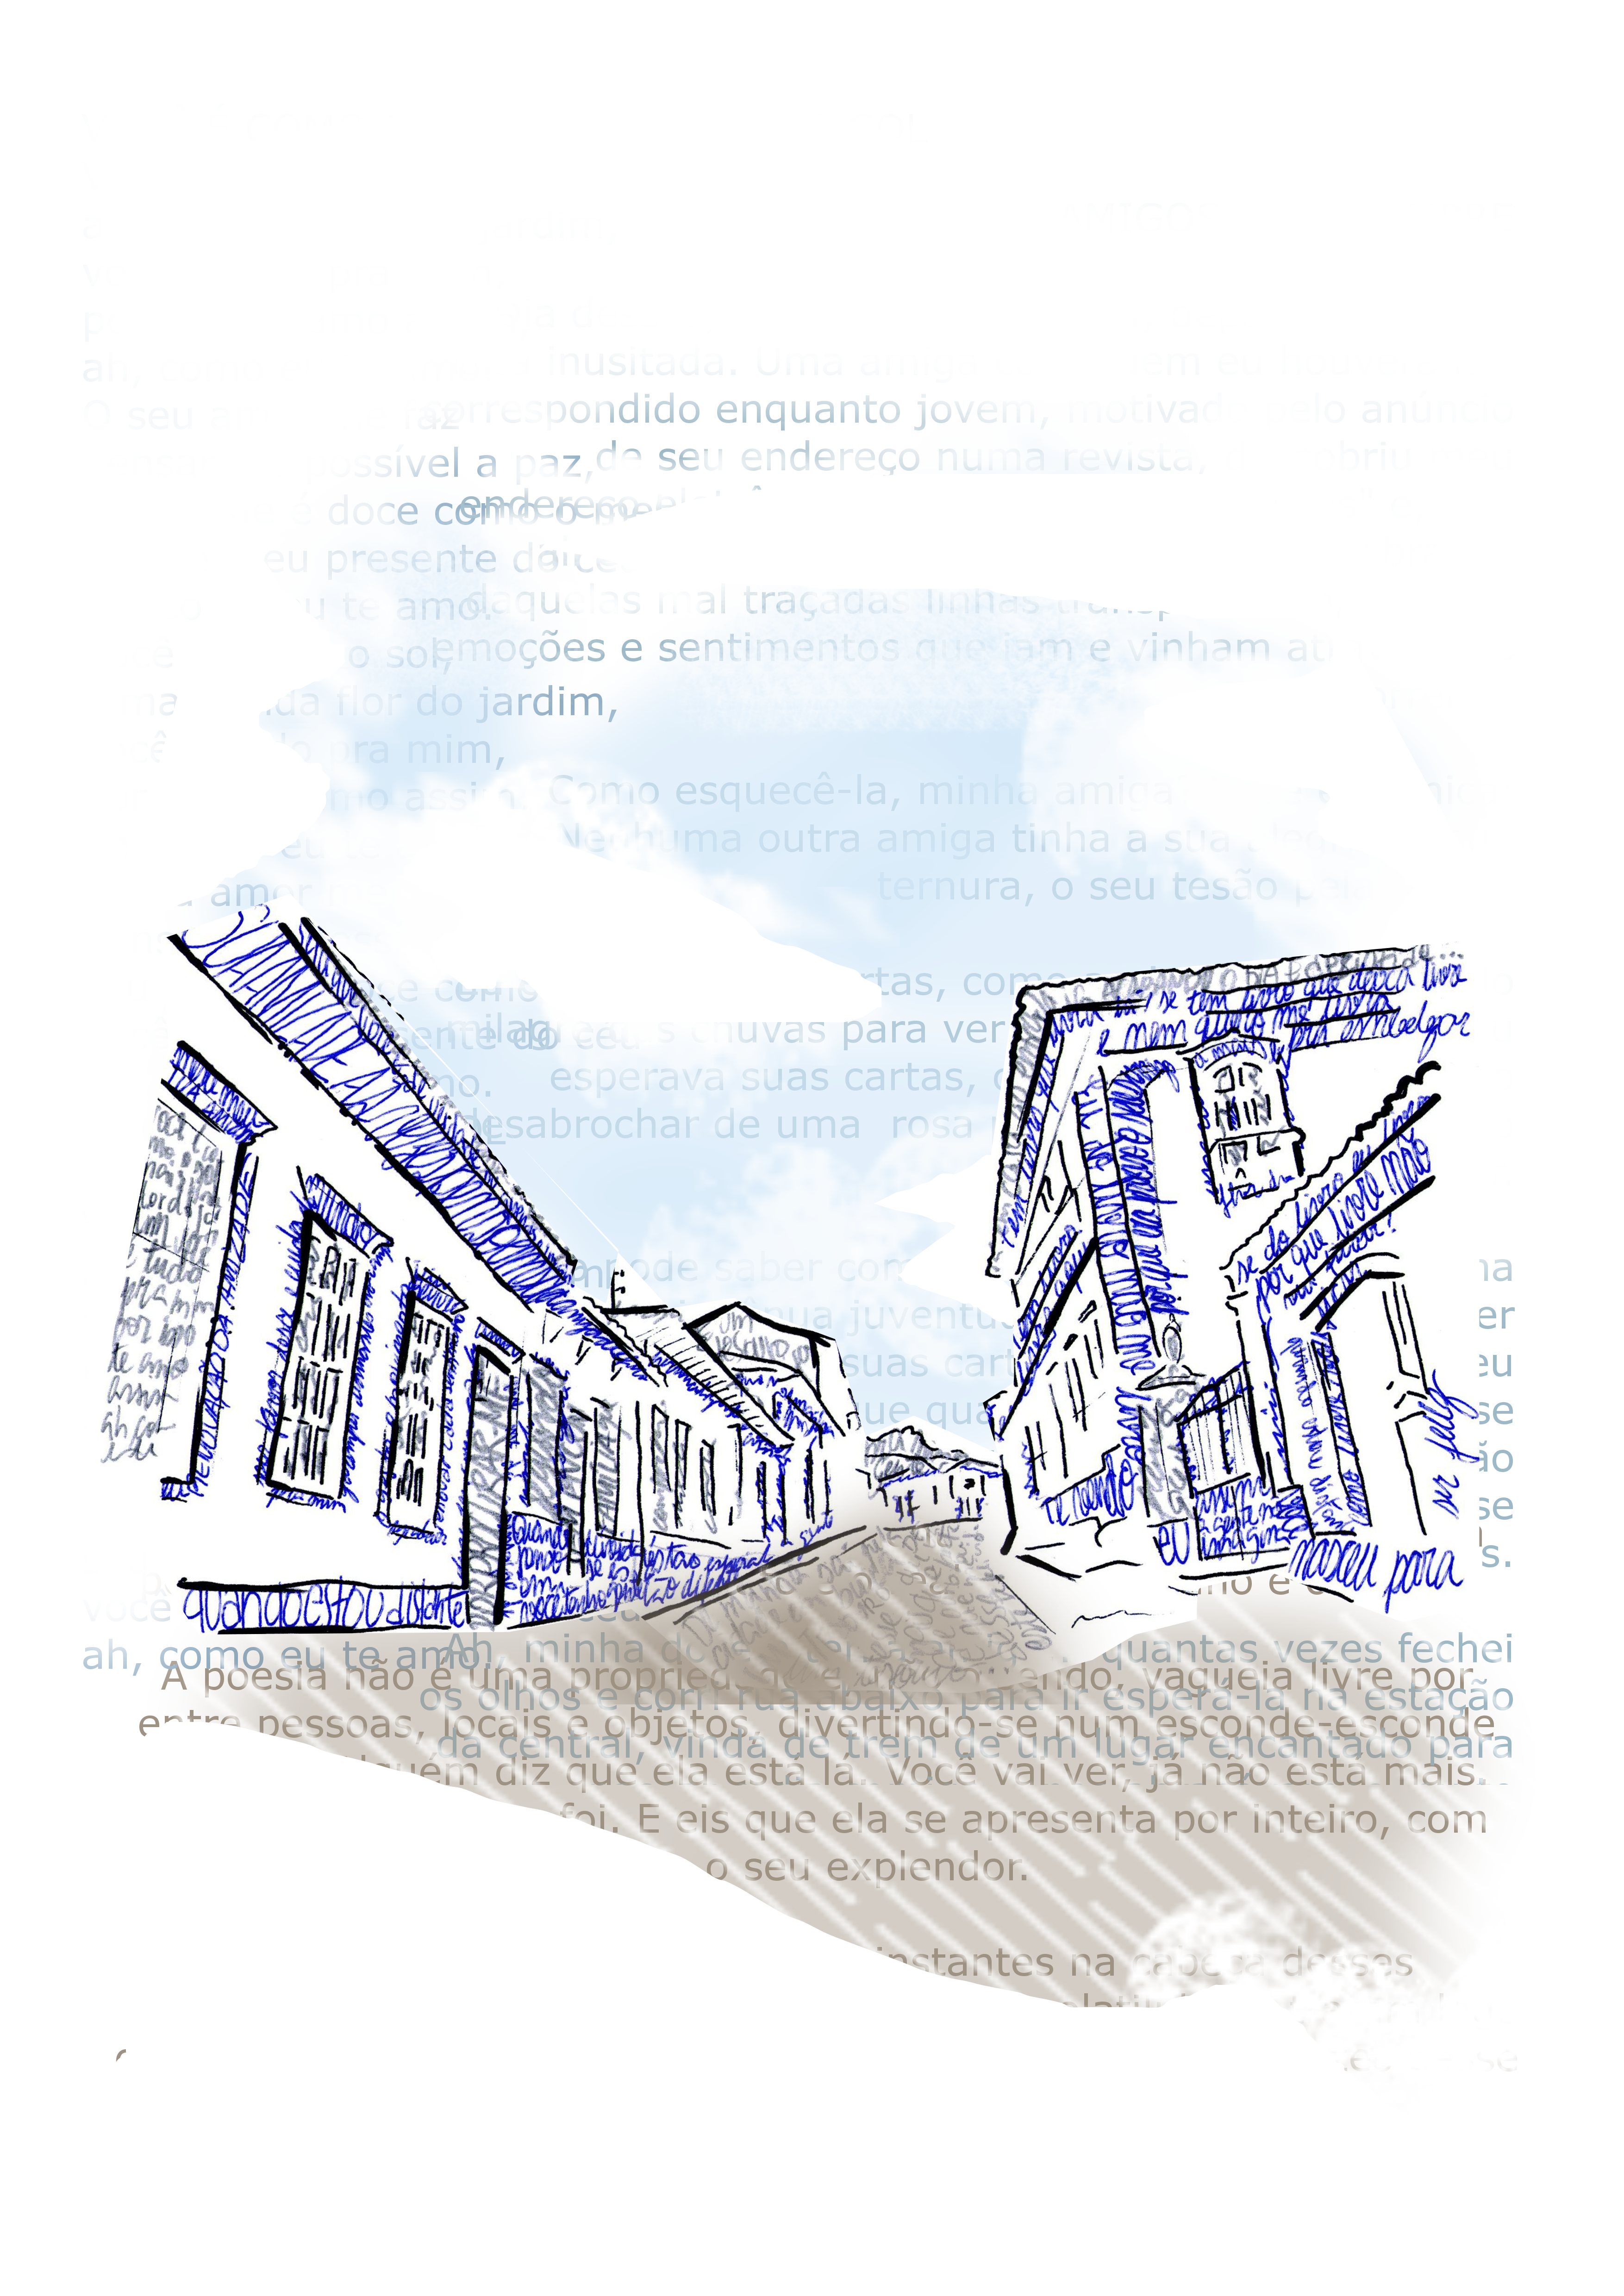 Imagem de fundo: desenho da rua principal de Sabará com trechos de poemas do autor Silas da Fonseca